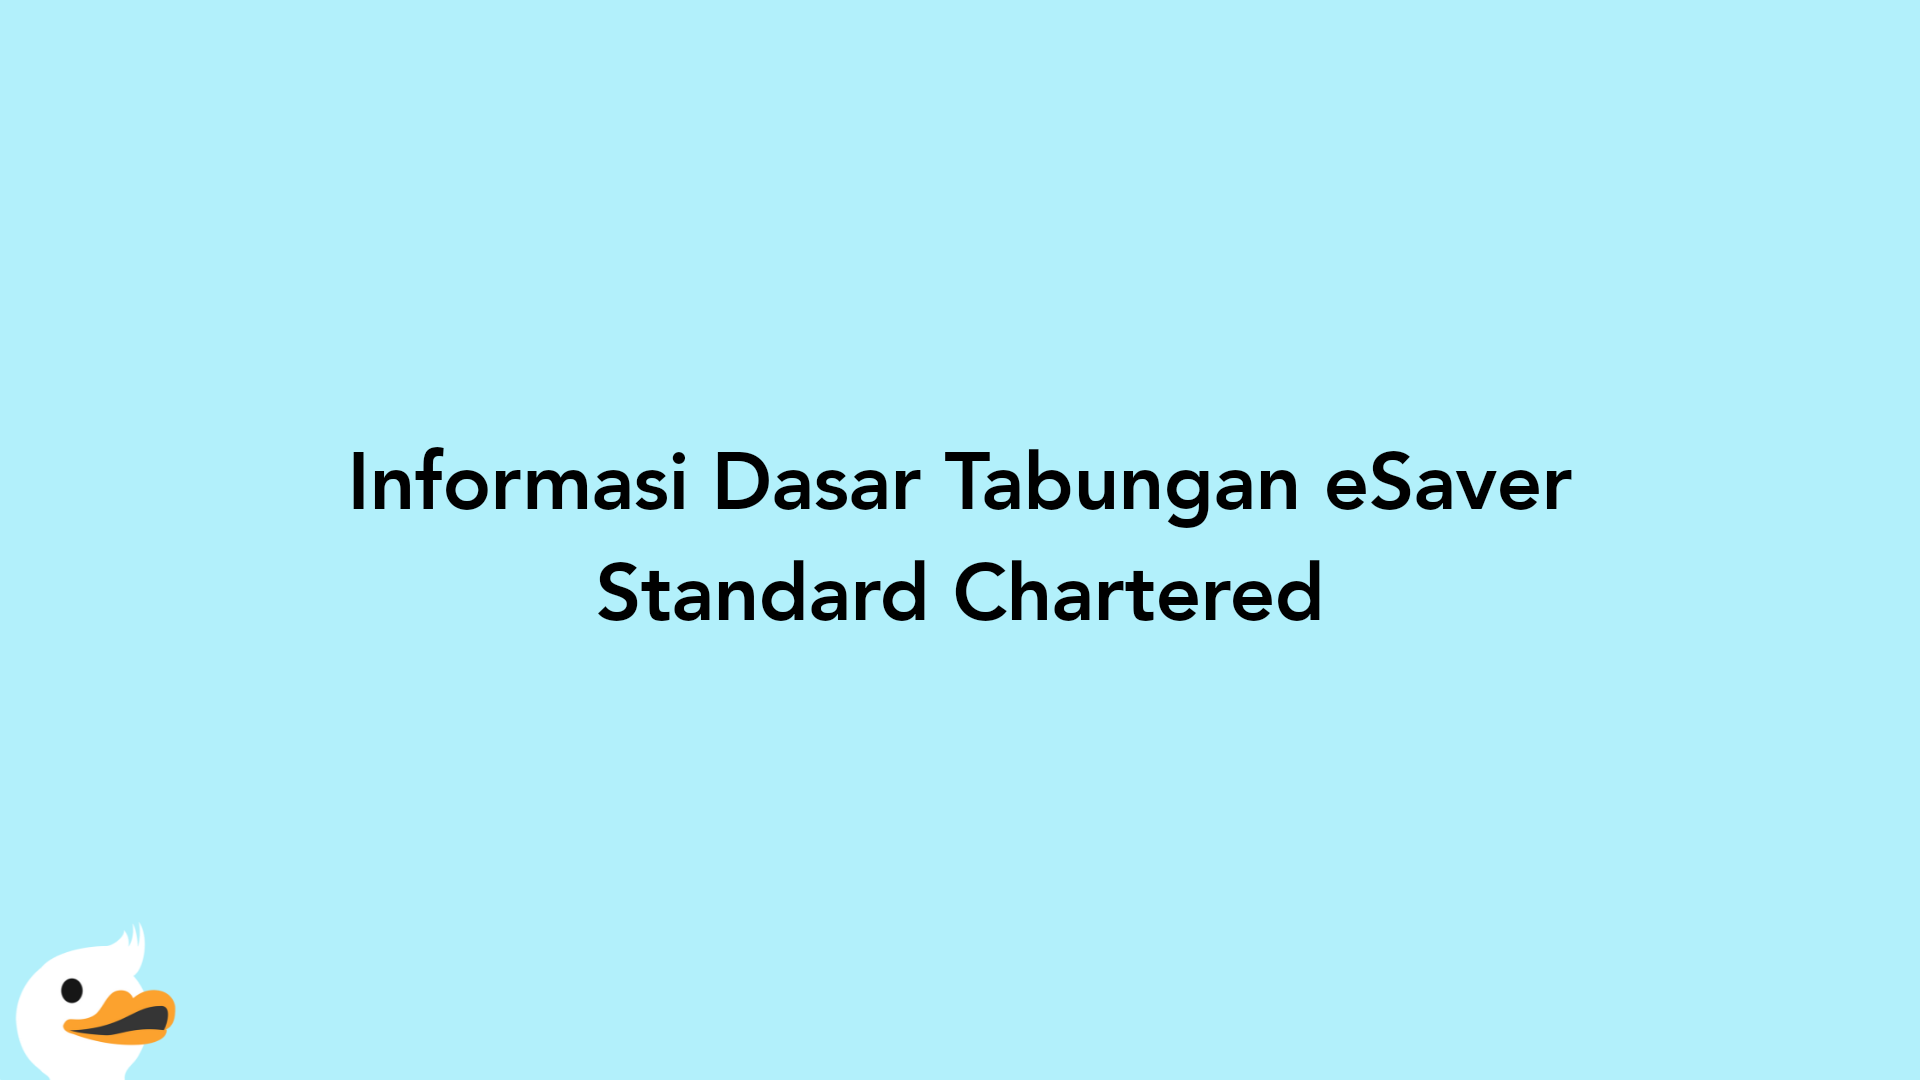 Informasi Dasar Tabungan eSaver Standard Chartered